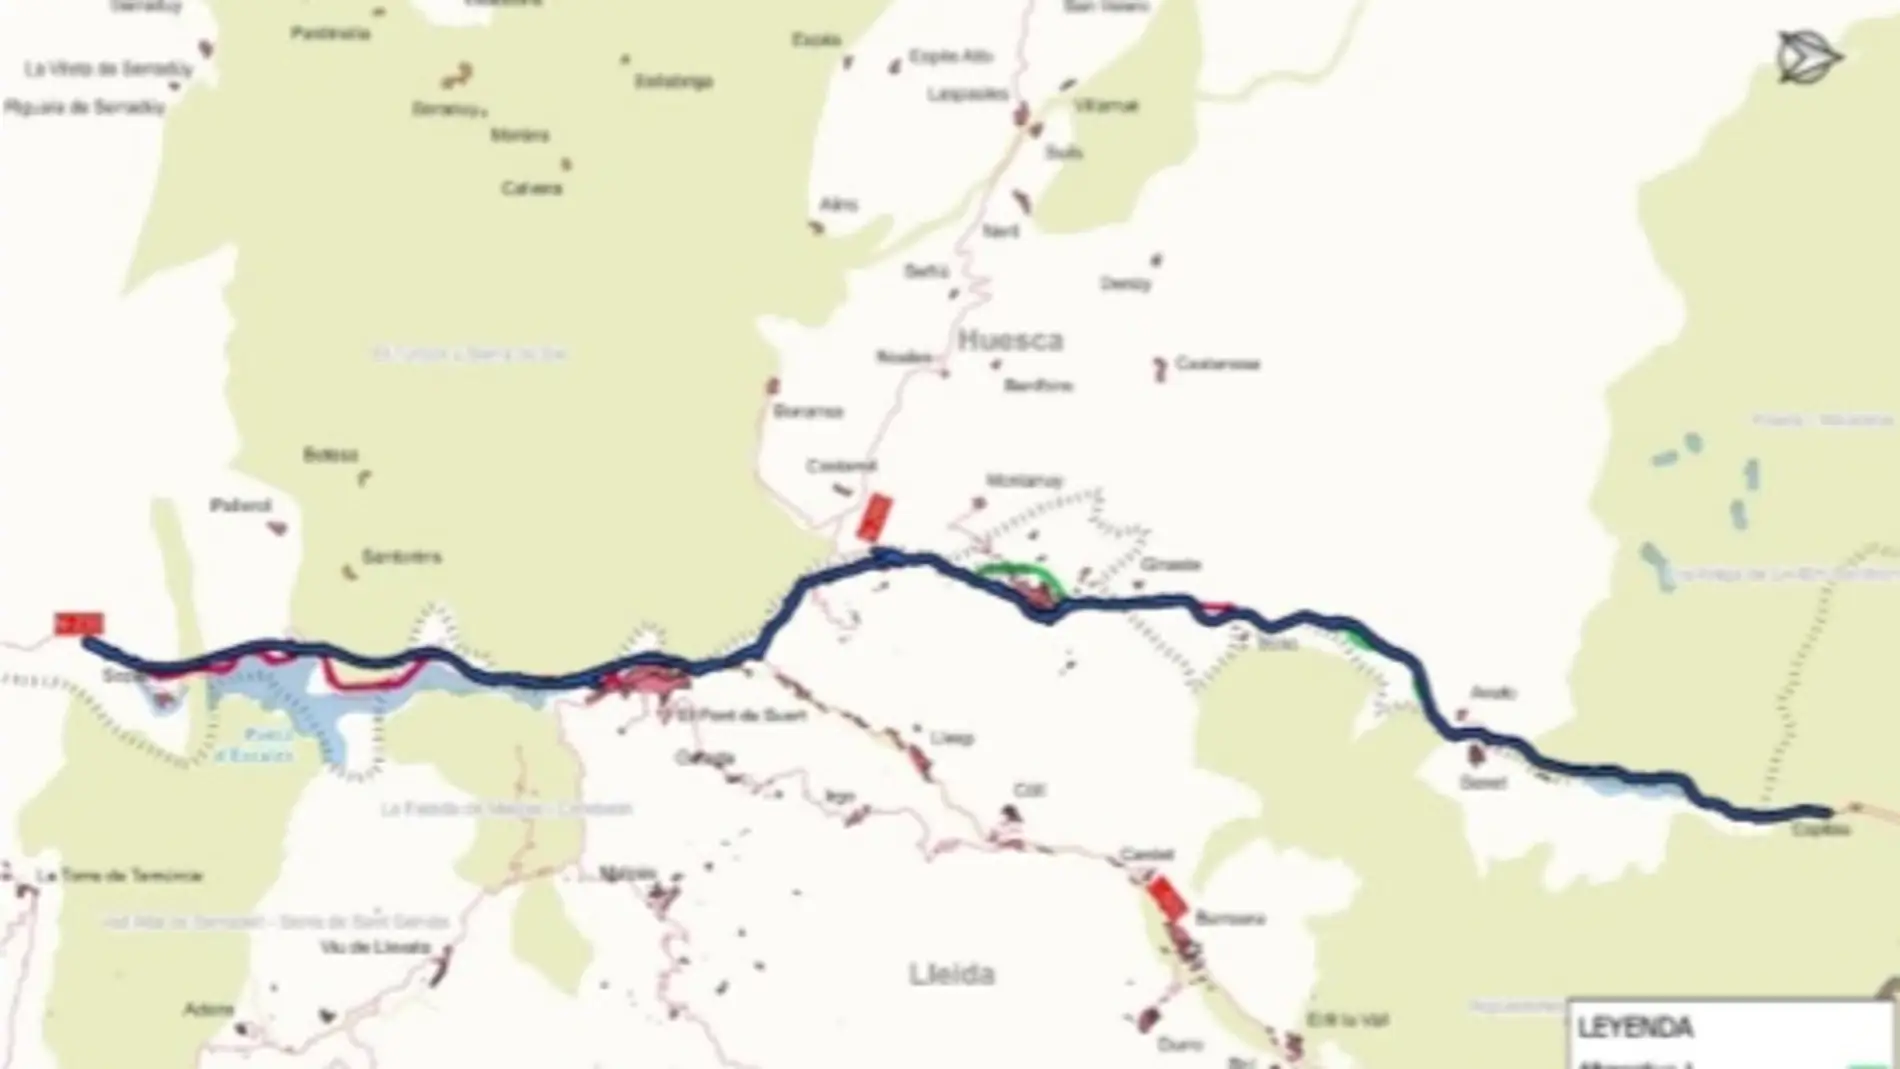 A Información Pública el acondicionamiento de la carretera entre Sopeira y el túnel de Viella